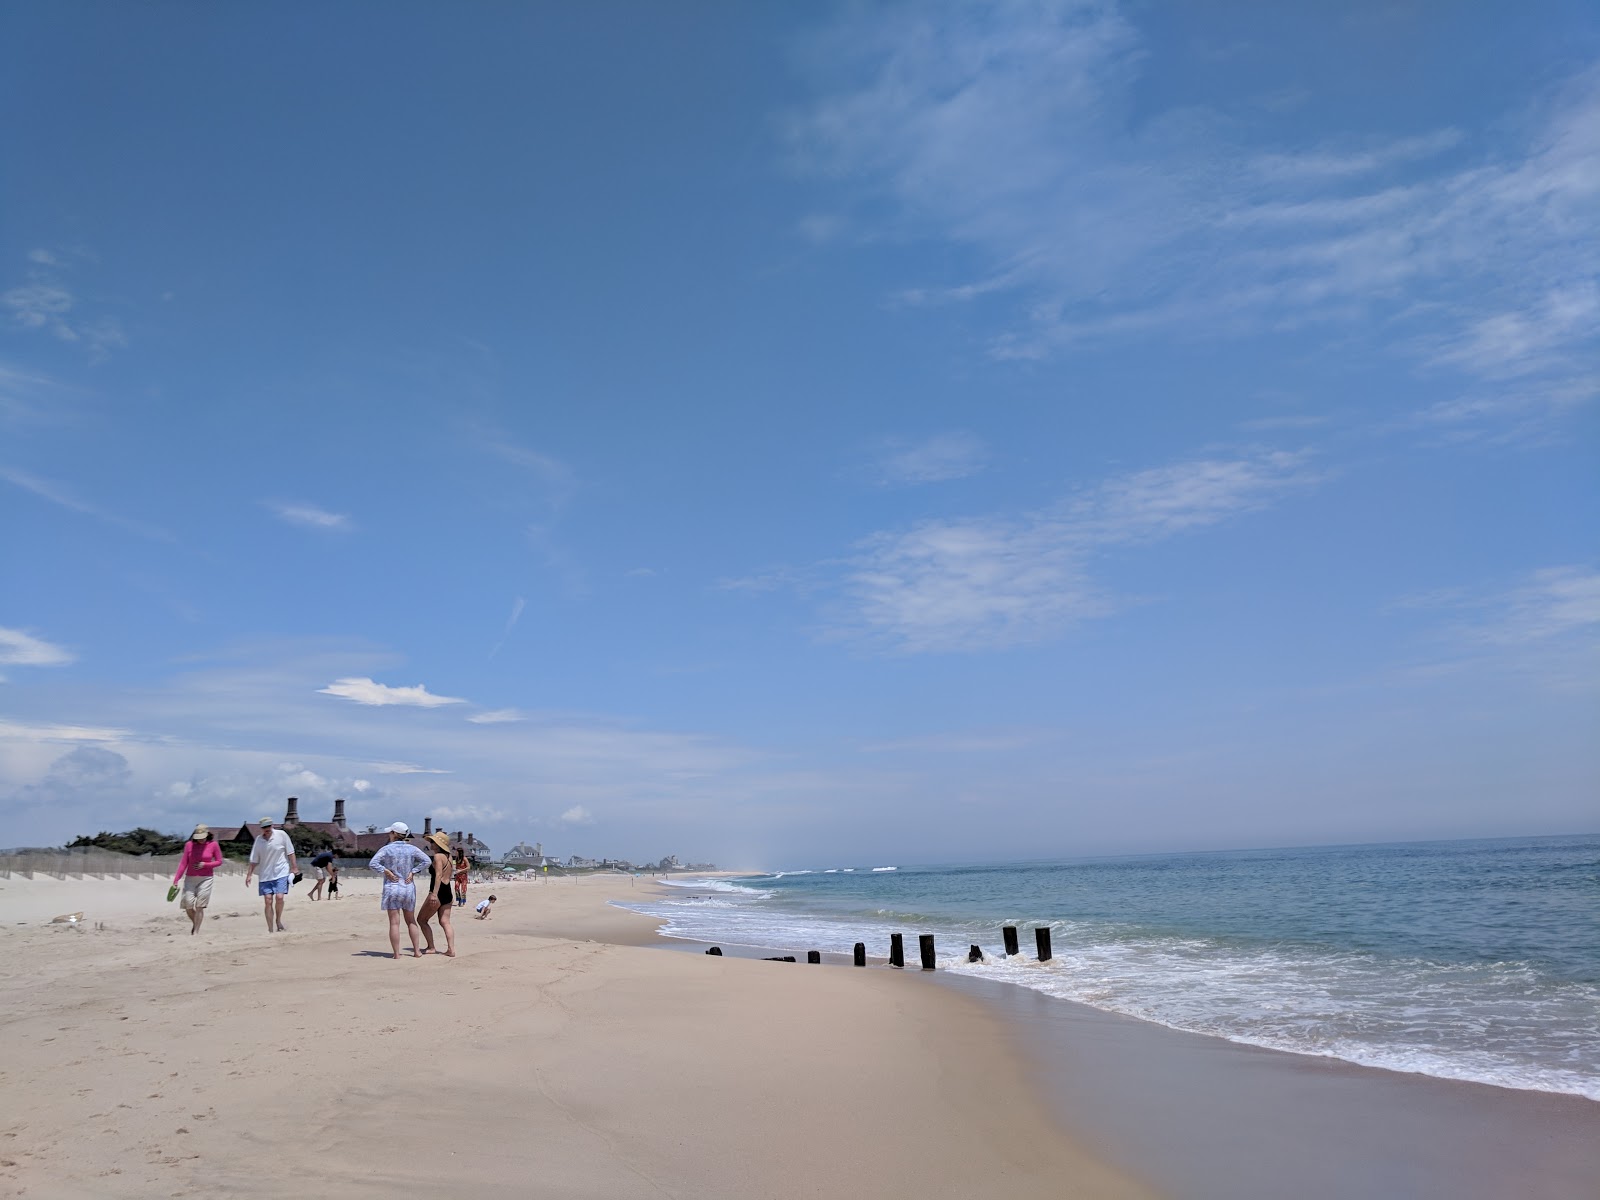 Coopers Plajı'in fotoğrafı geniş plaj ile birlikte